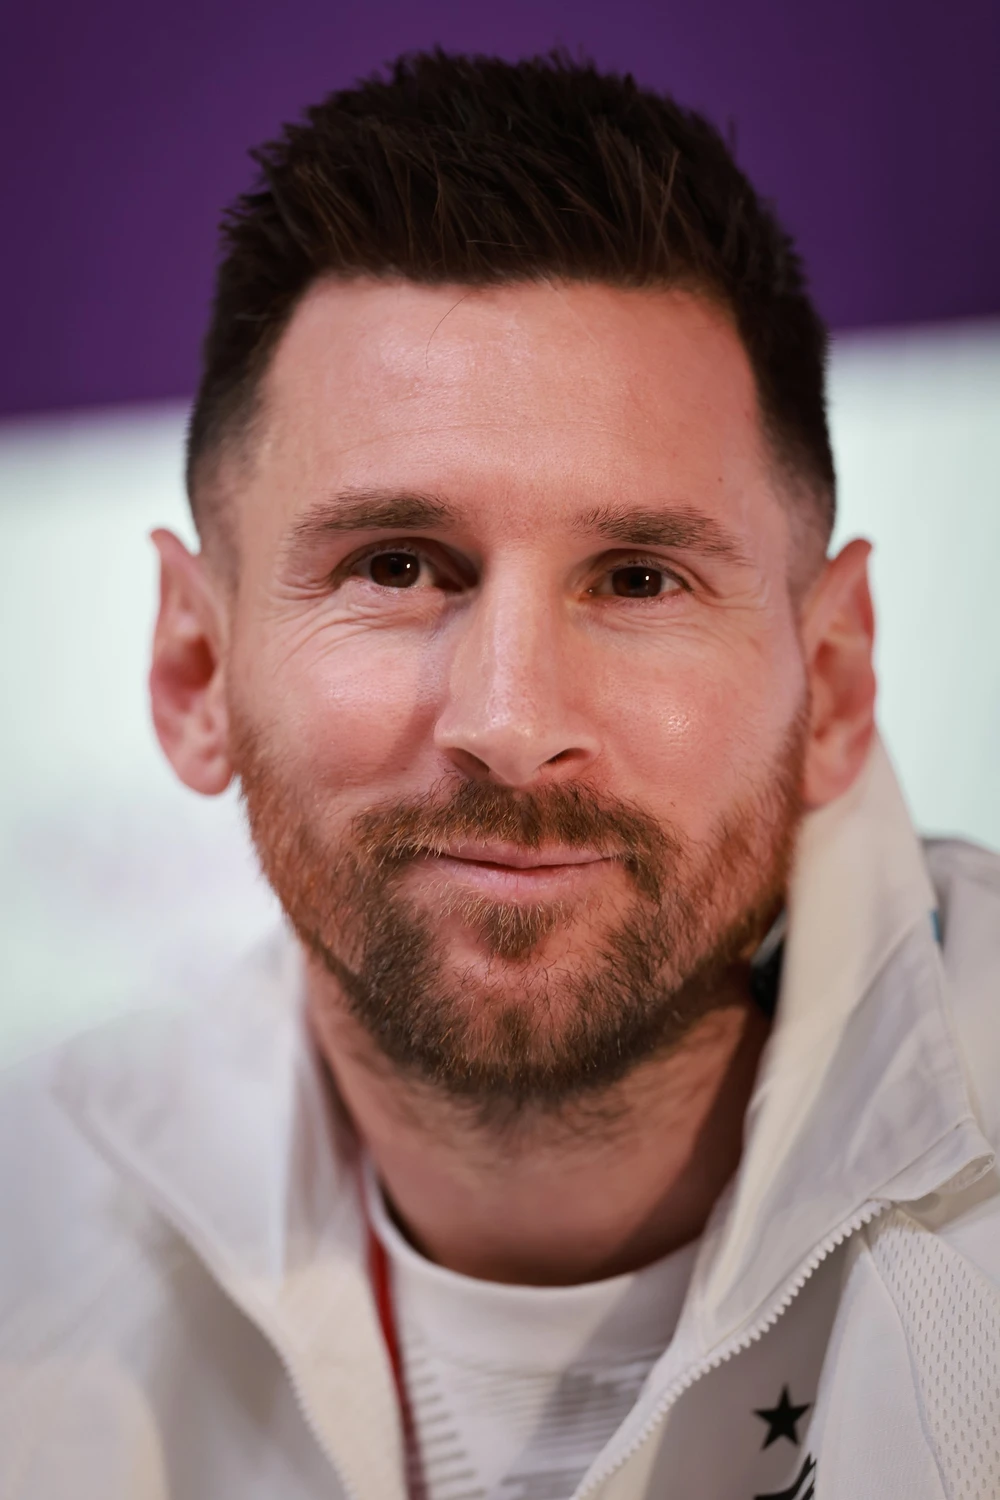 Những kỷ lục thế giới ấn tượng nhất của Lionel Messi